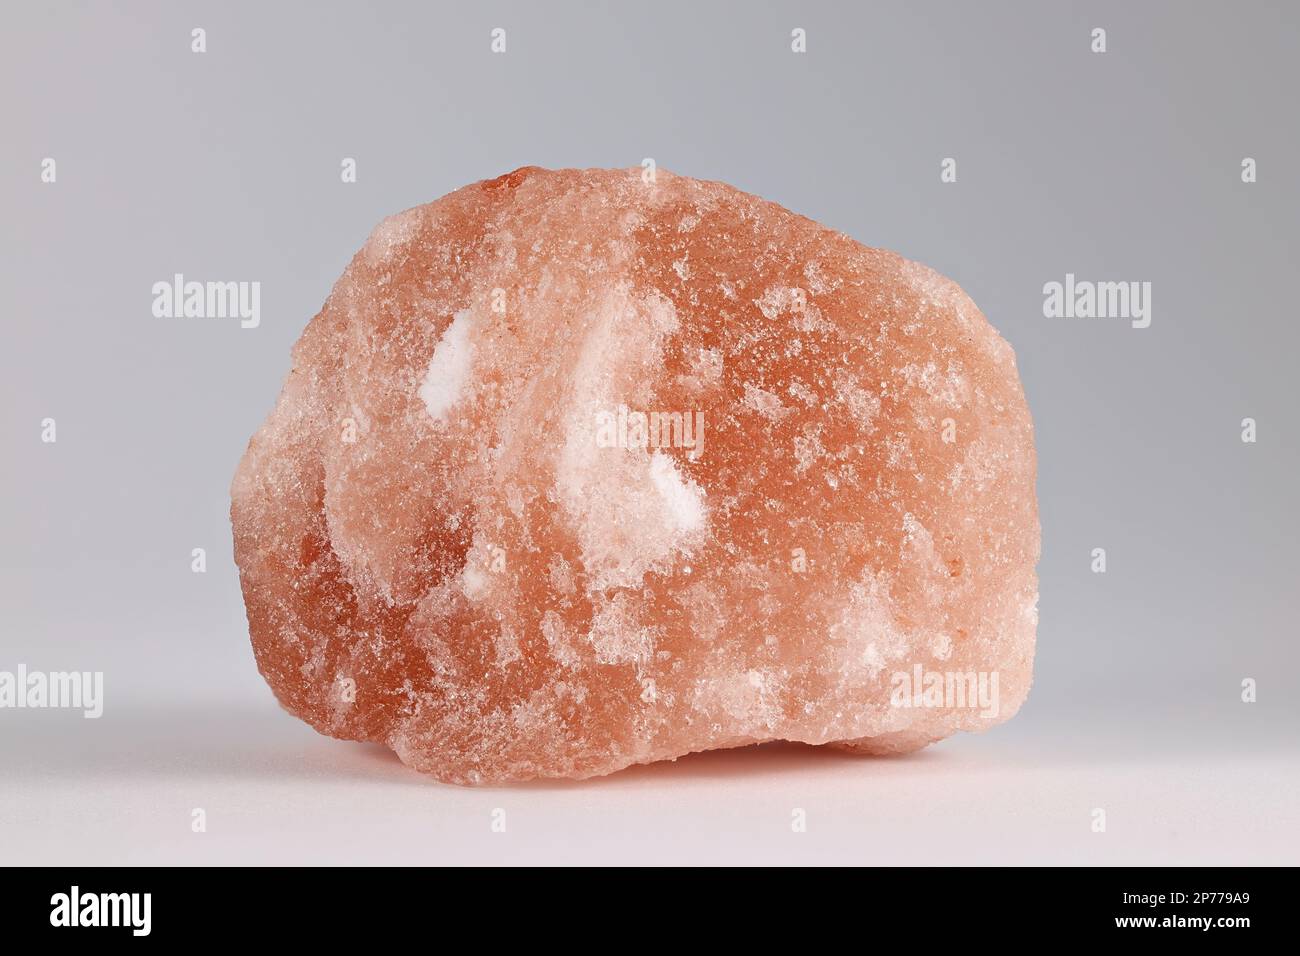 Halogenit, gemeinhin als Steinsalz bezeichnet, ist eine Art von Salz, die mineralische (natürliche) Form von Natriumchlorid (NaCl). Stockfoto